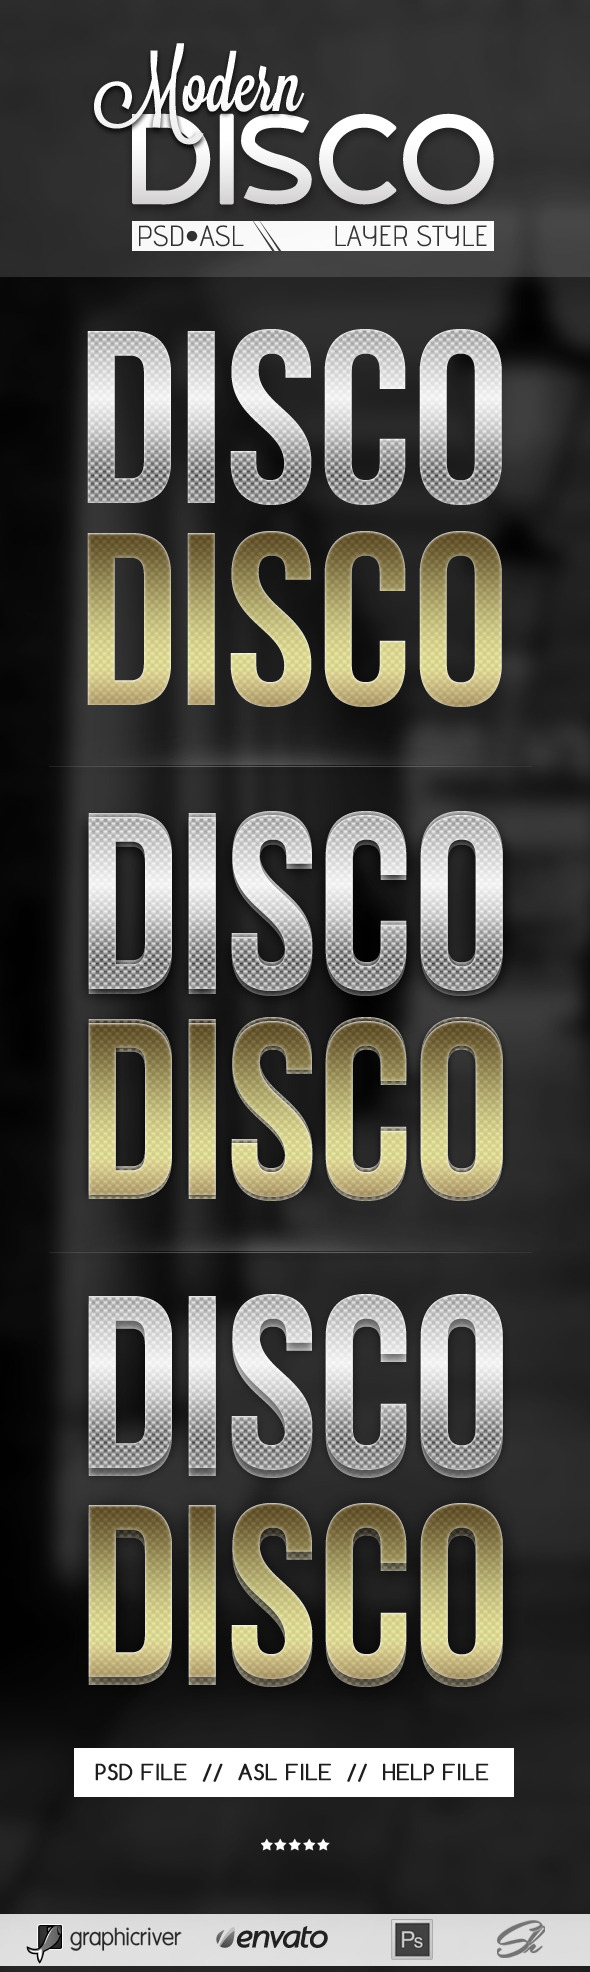 Disco Text style